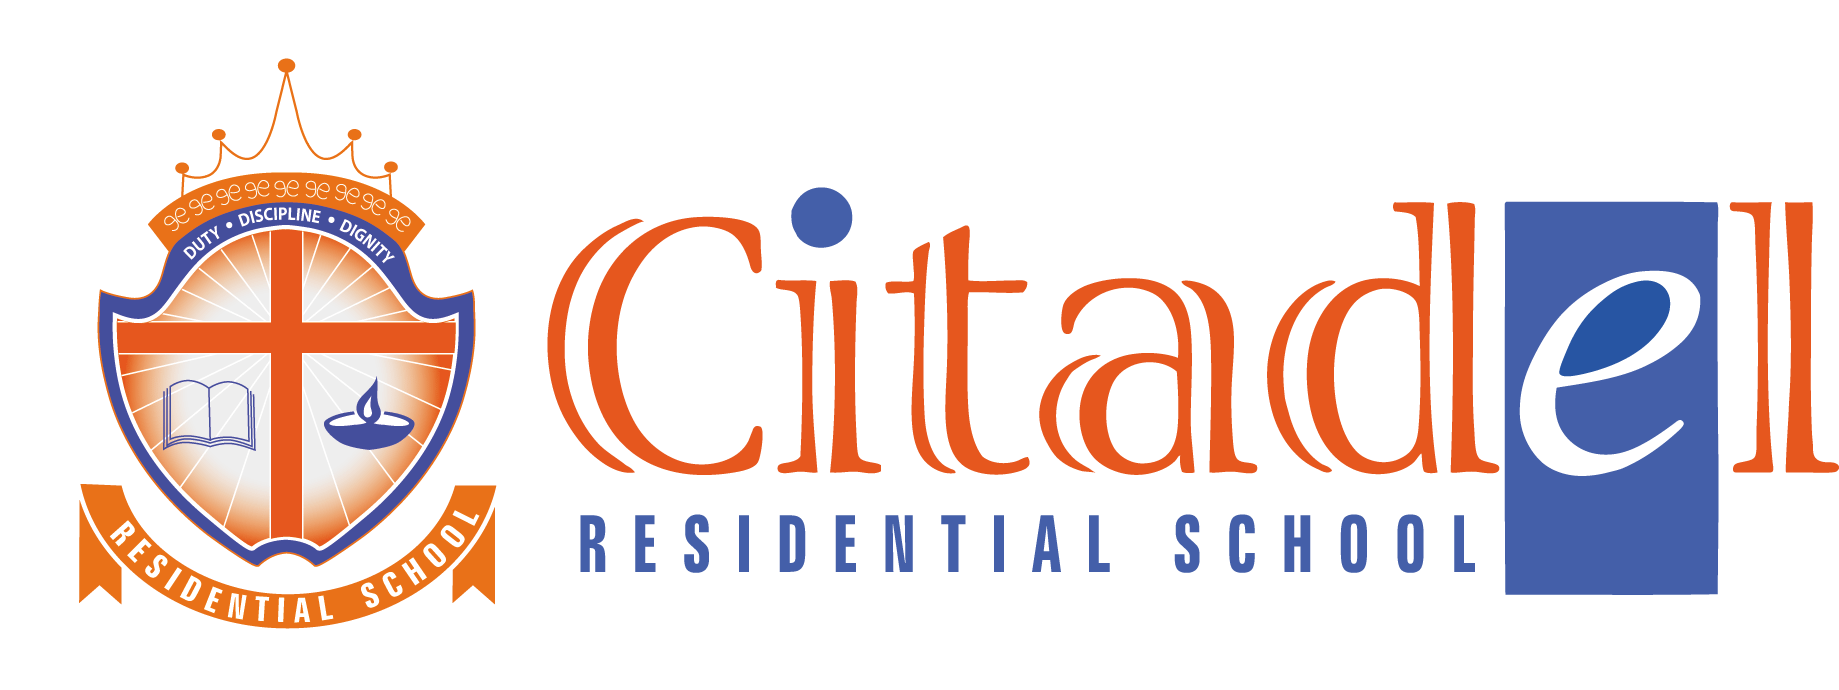 Citadel Residential School